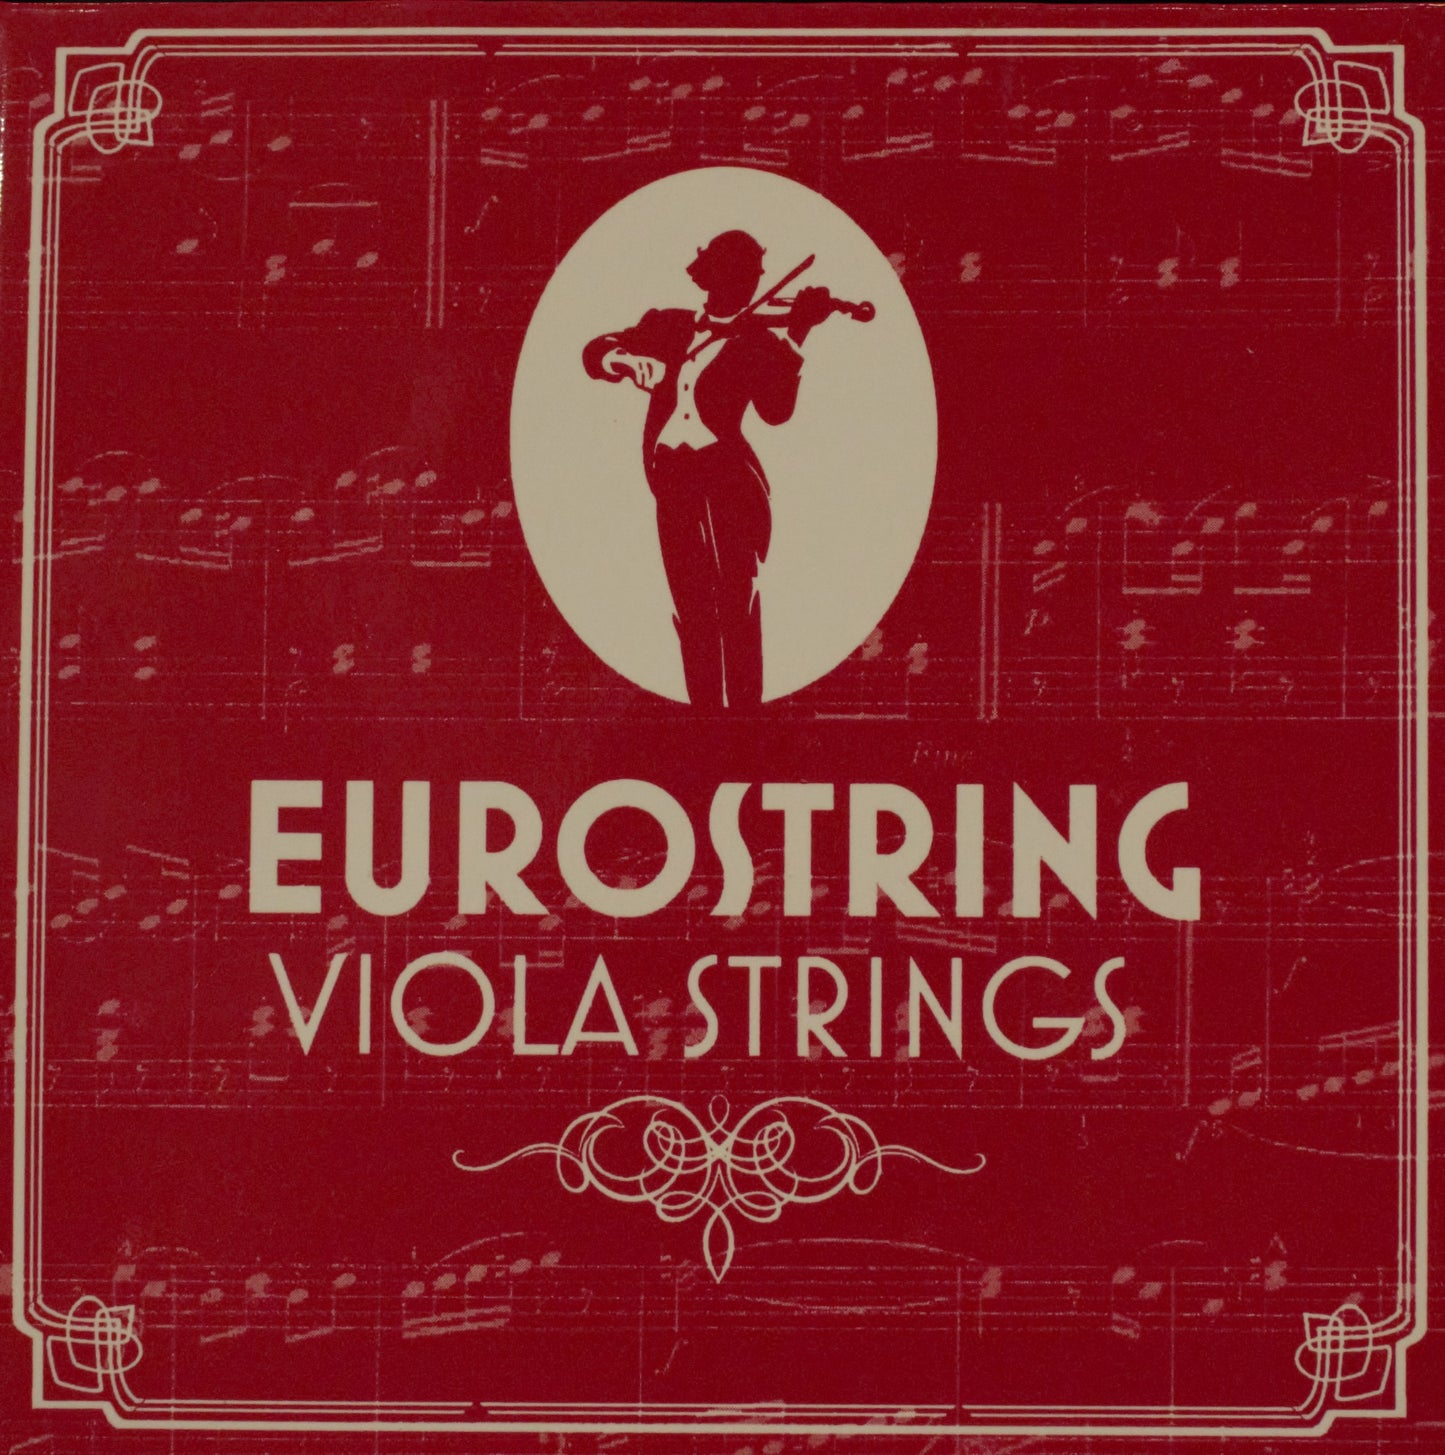 Eurostring Violin String Medium Set